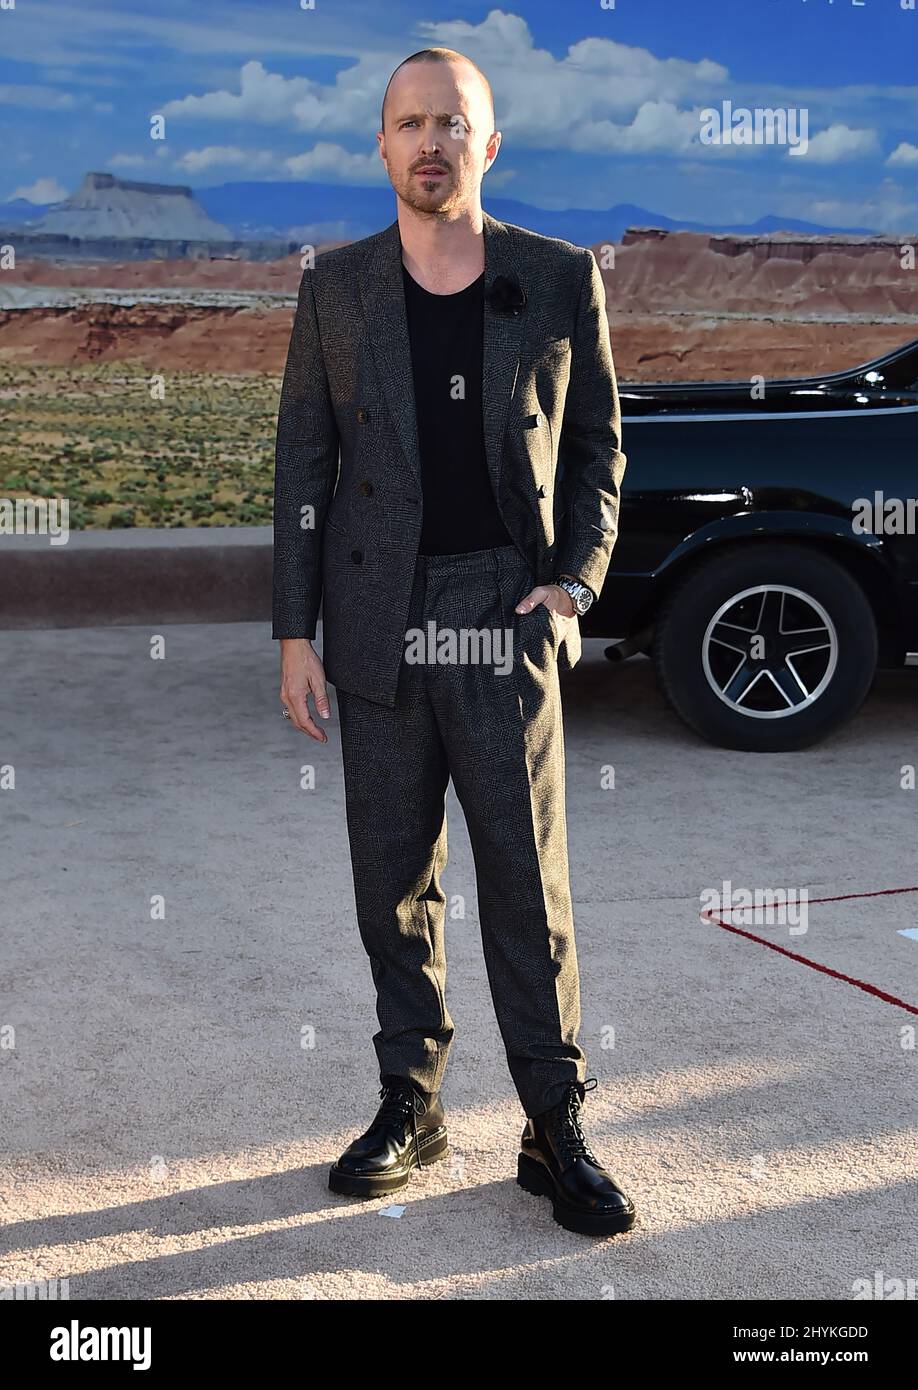 Aaron Paul à la première de Netflix 'El Camino: A Breaking Bad Movie', qui s'est tenue au Regency Village le 7 octobre 2019 à Westwood, aux États-Unis. Banque D'Images